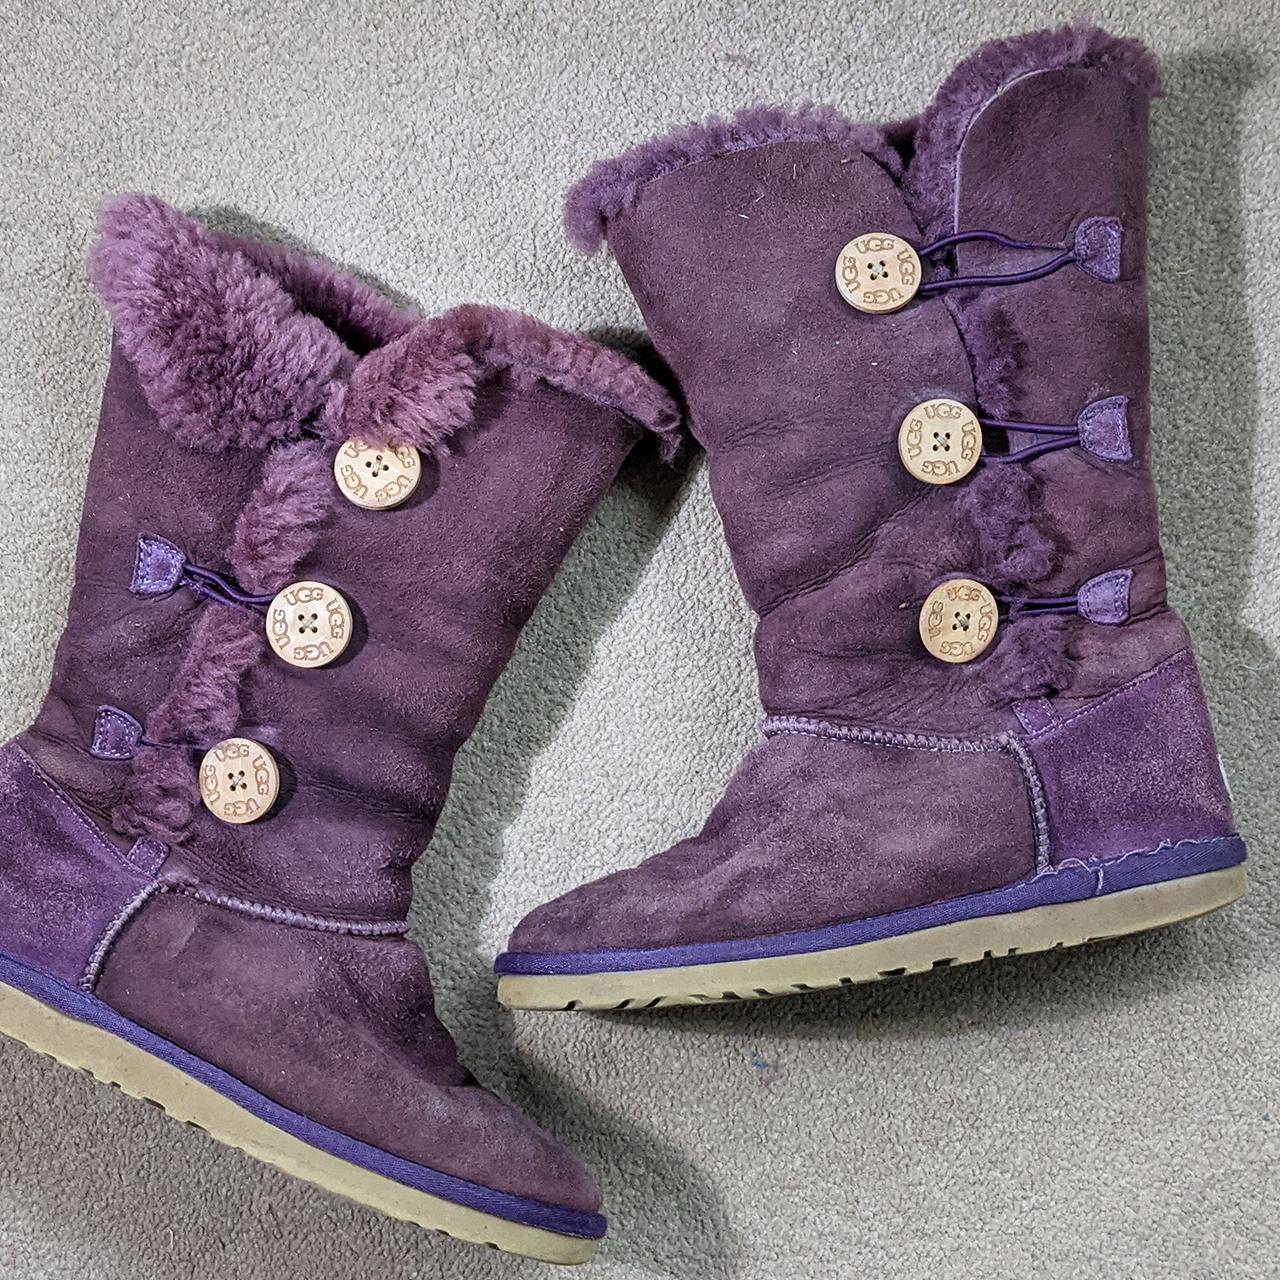 Damaged - Genuine Ugg Boots Purple Suede Fur Lined... - Depop